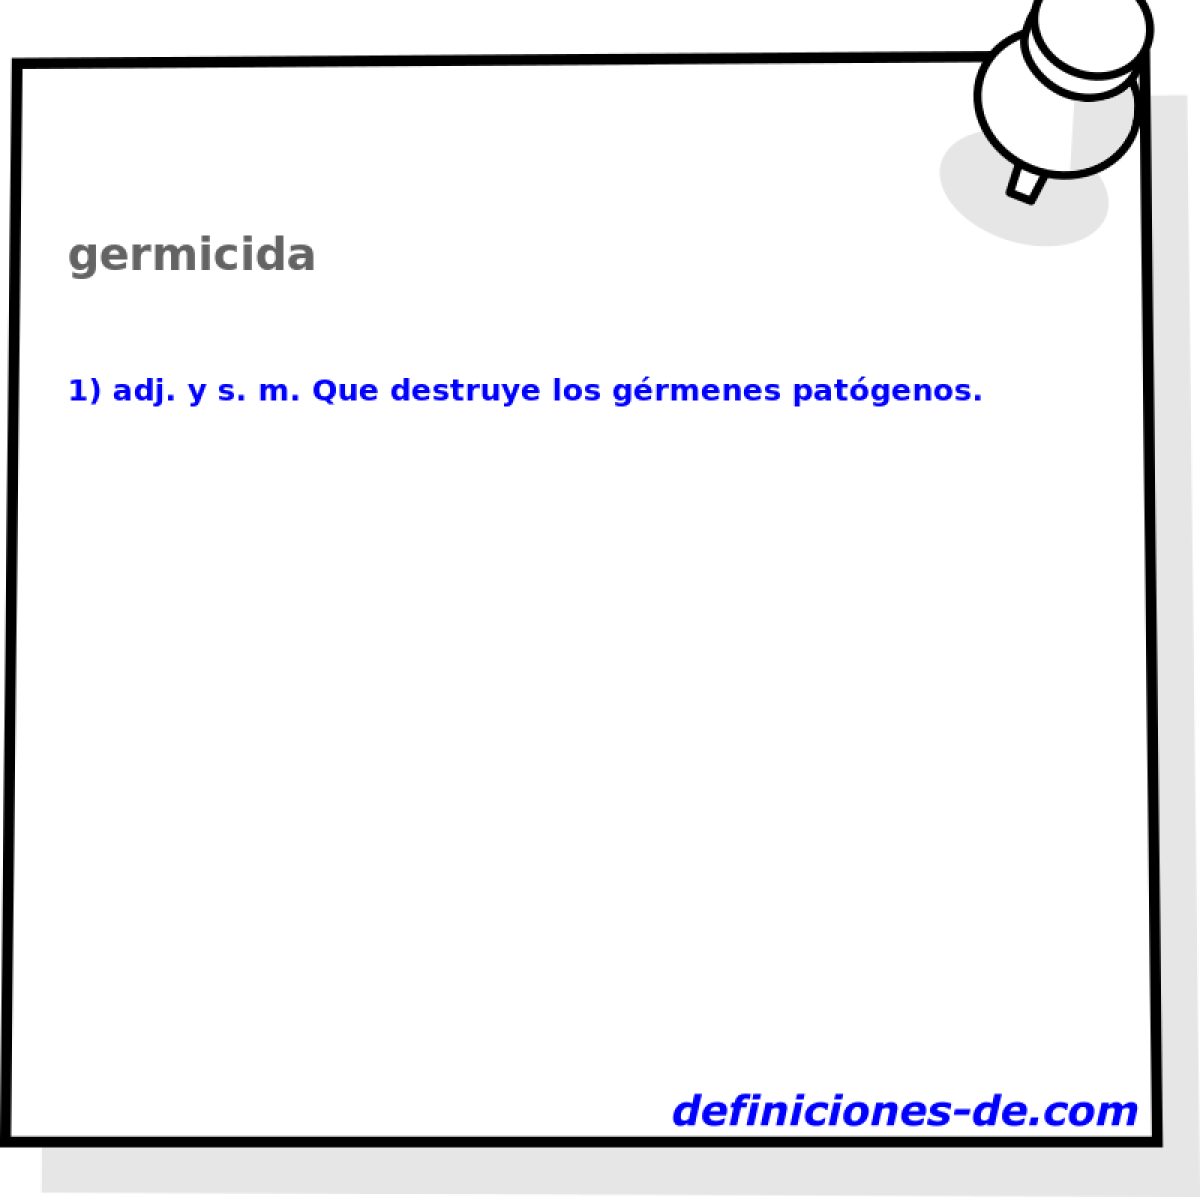 germicida 